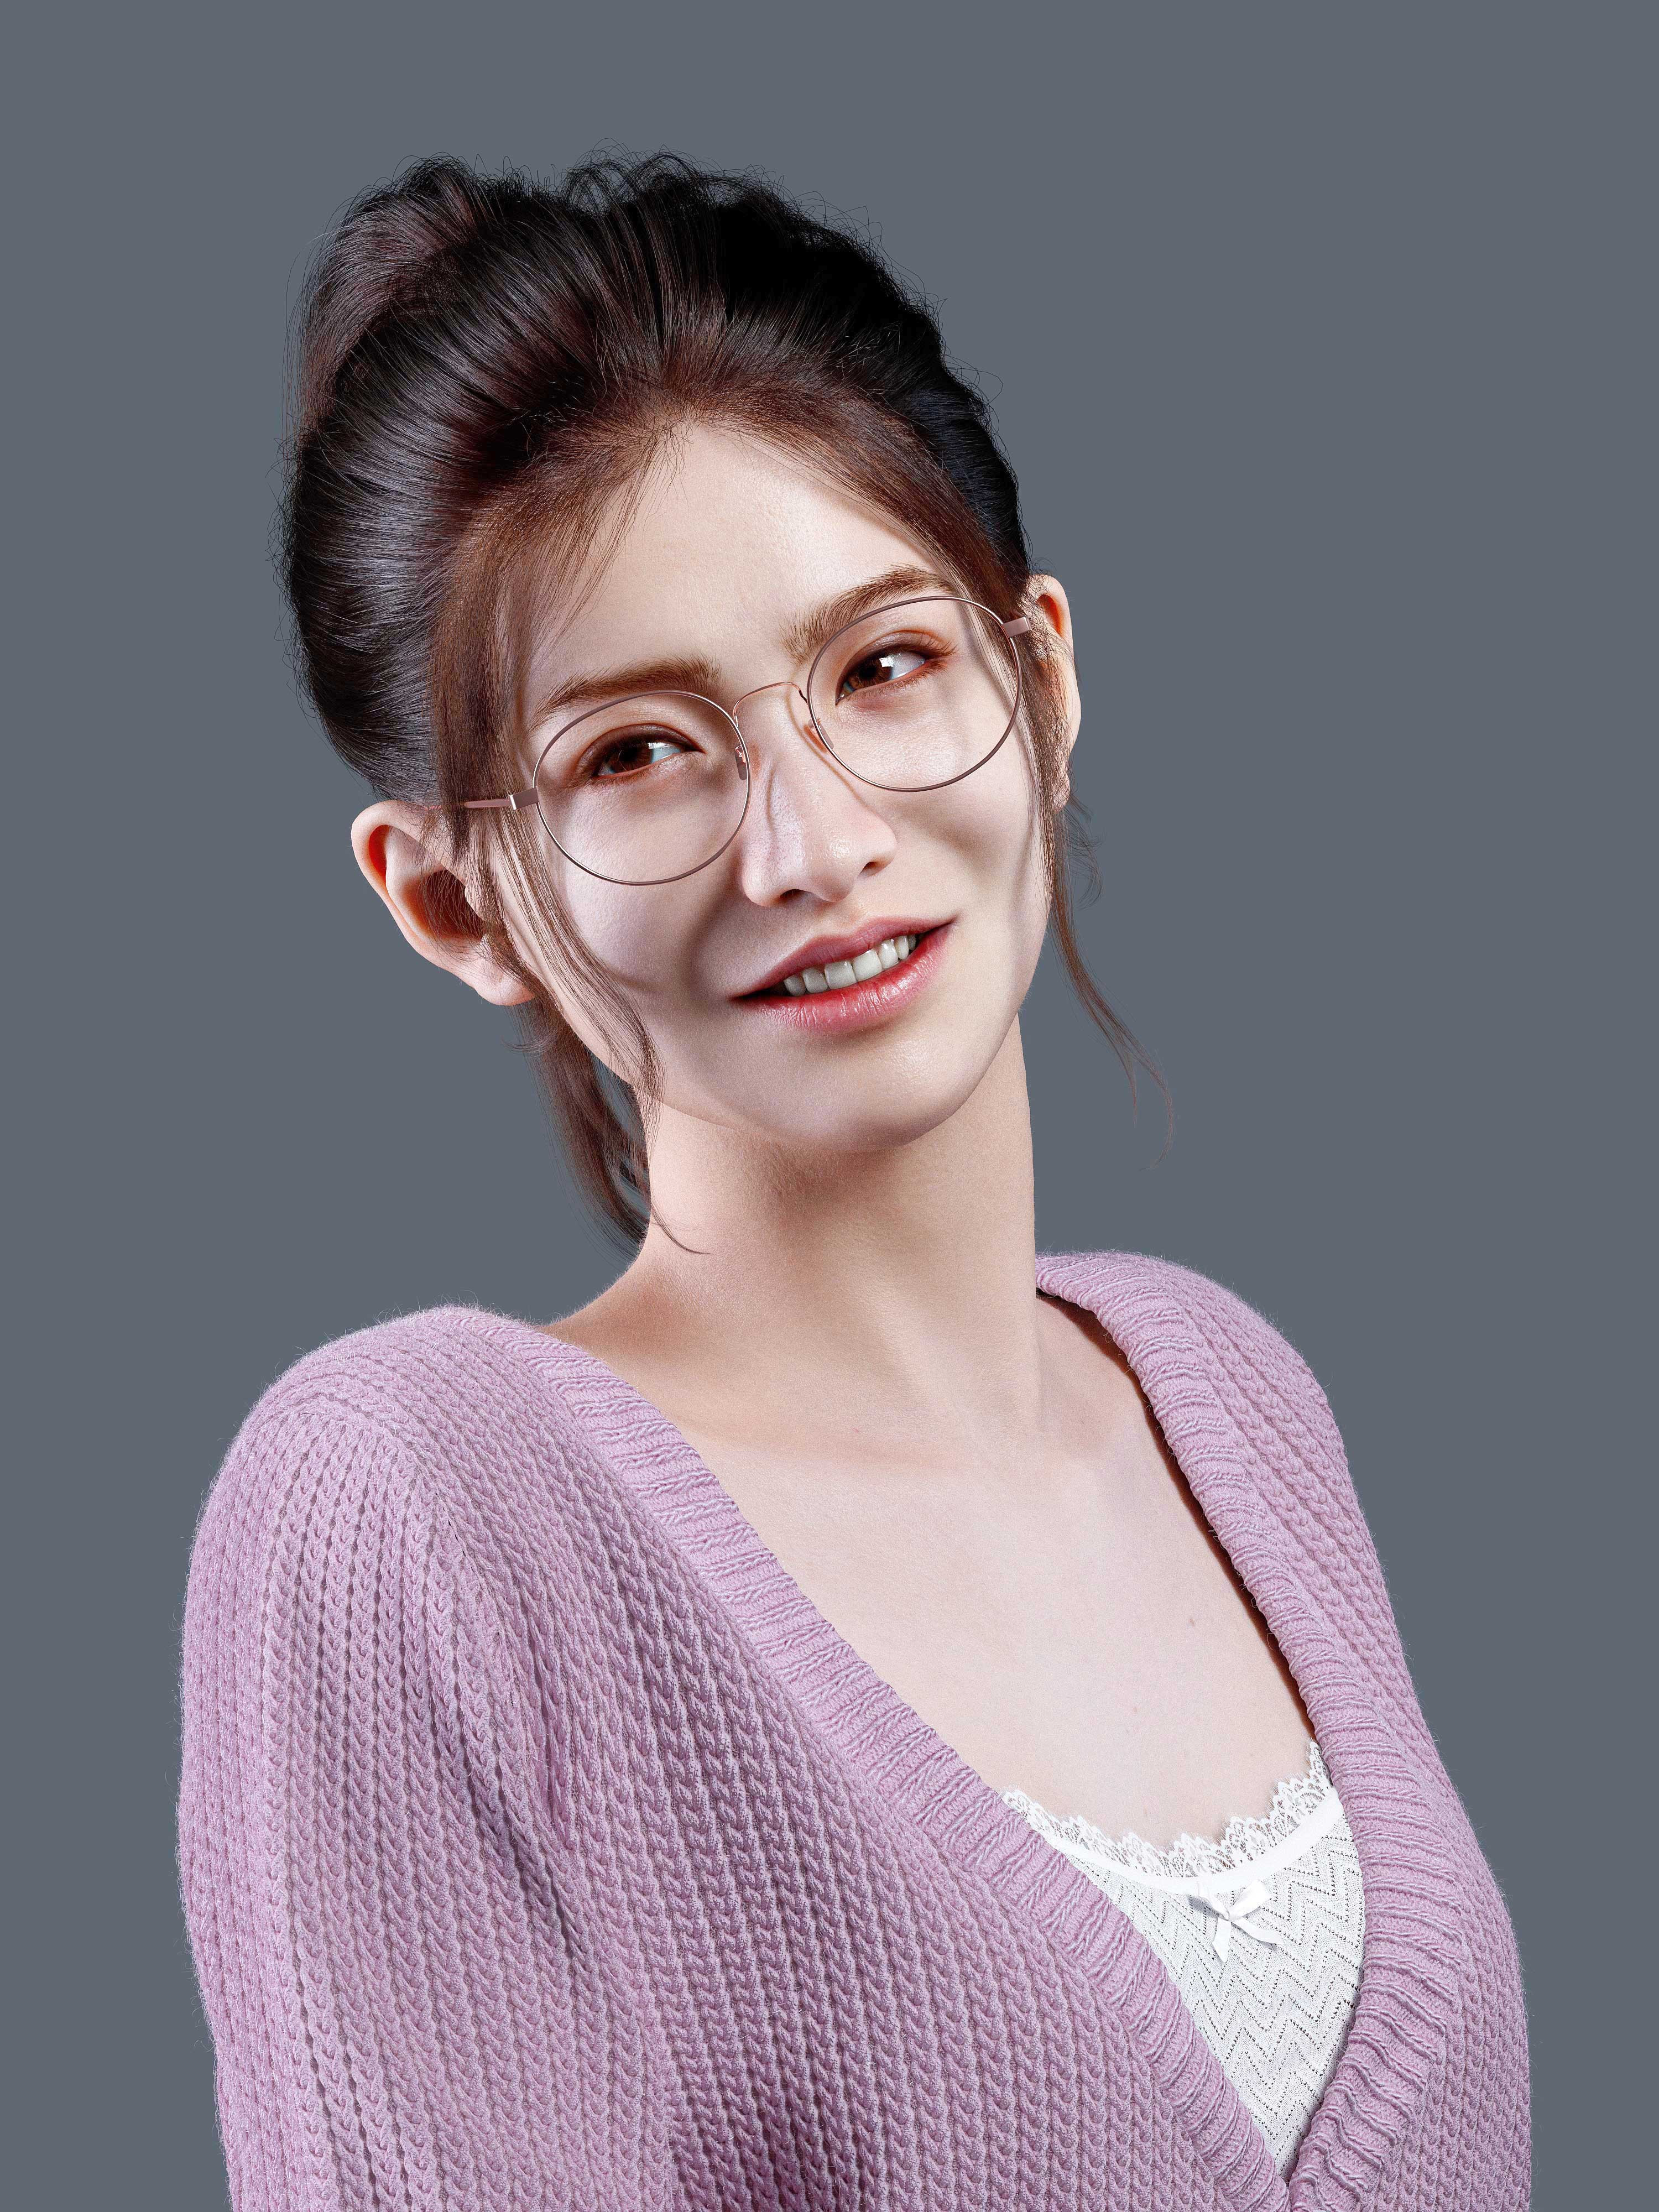 General 3000x4000 Forever (artist) CGI women Asian portrait glasses